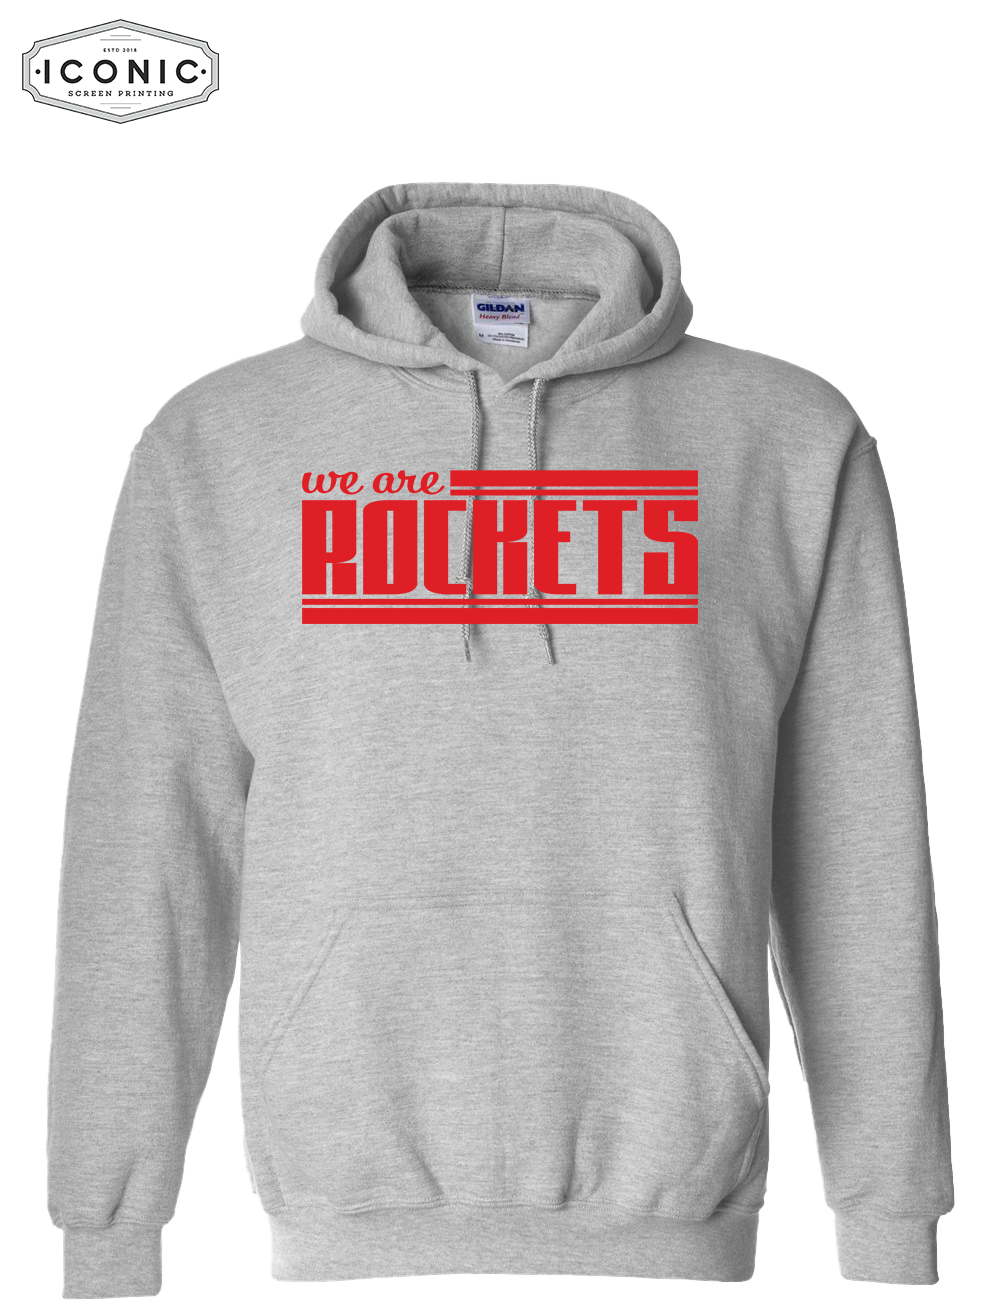 We Are Rockets - Heavy Blend Hooded Sweatshirt